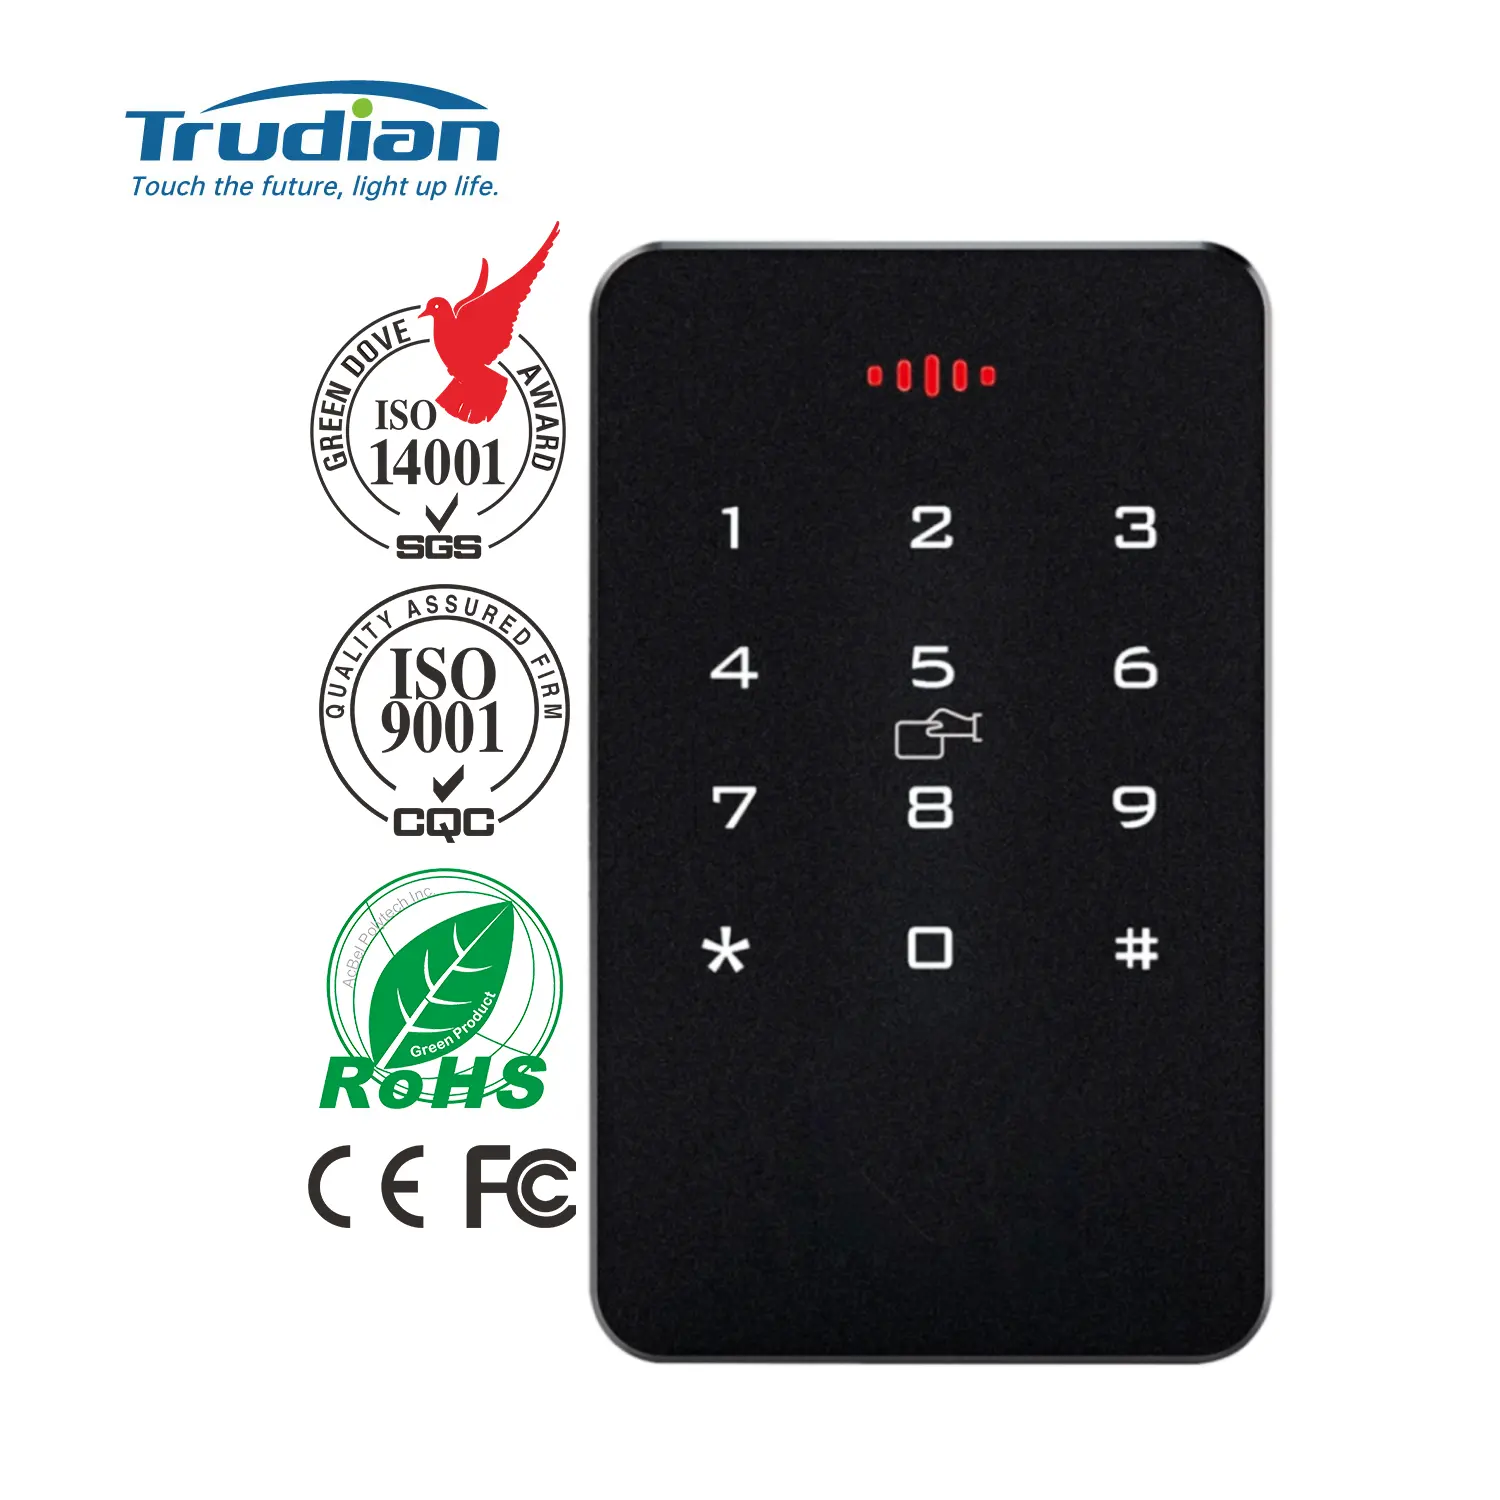 Trudian duvar montaj biyometrik Rfid okuyucu NFC kart okuyucu şifre anahtarsız erişim kontrolü